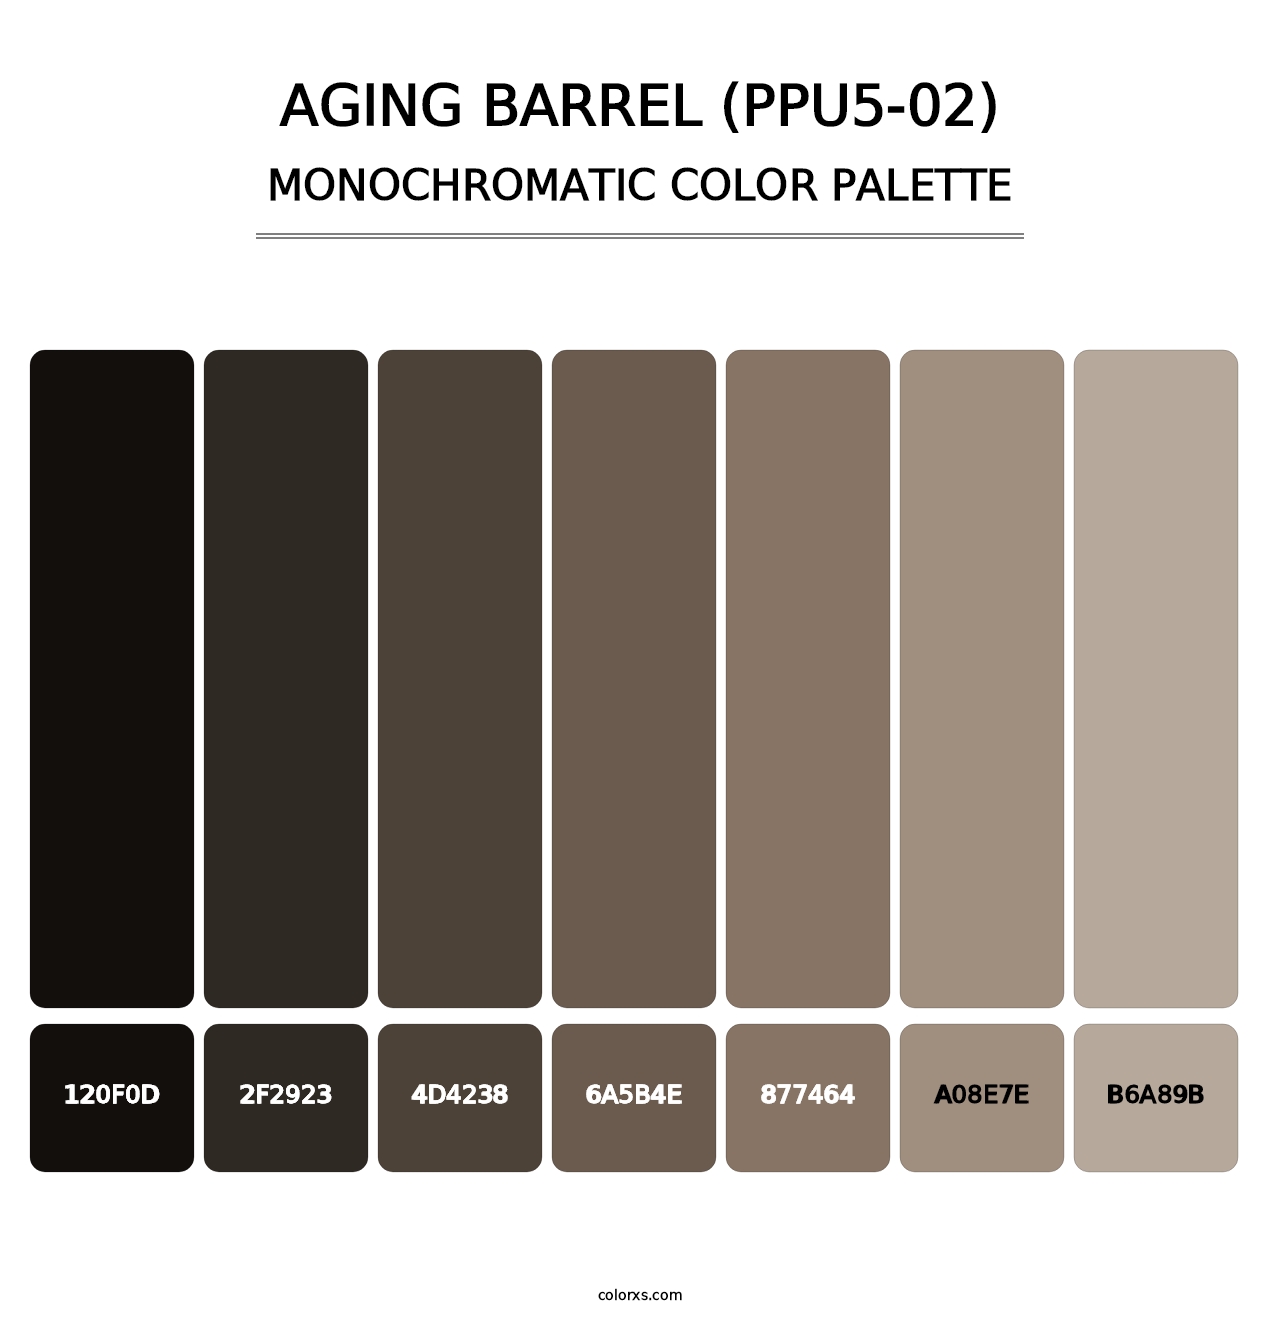 Aging Barrel (PPU5-02) - Monochromatic Color Palette